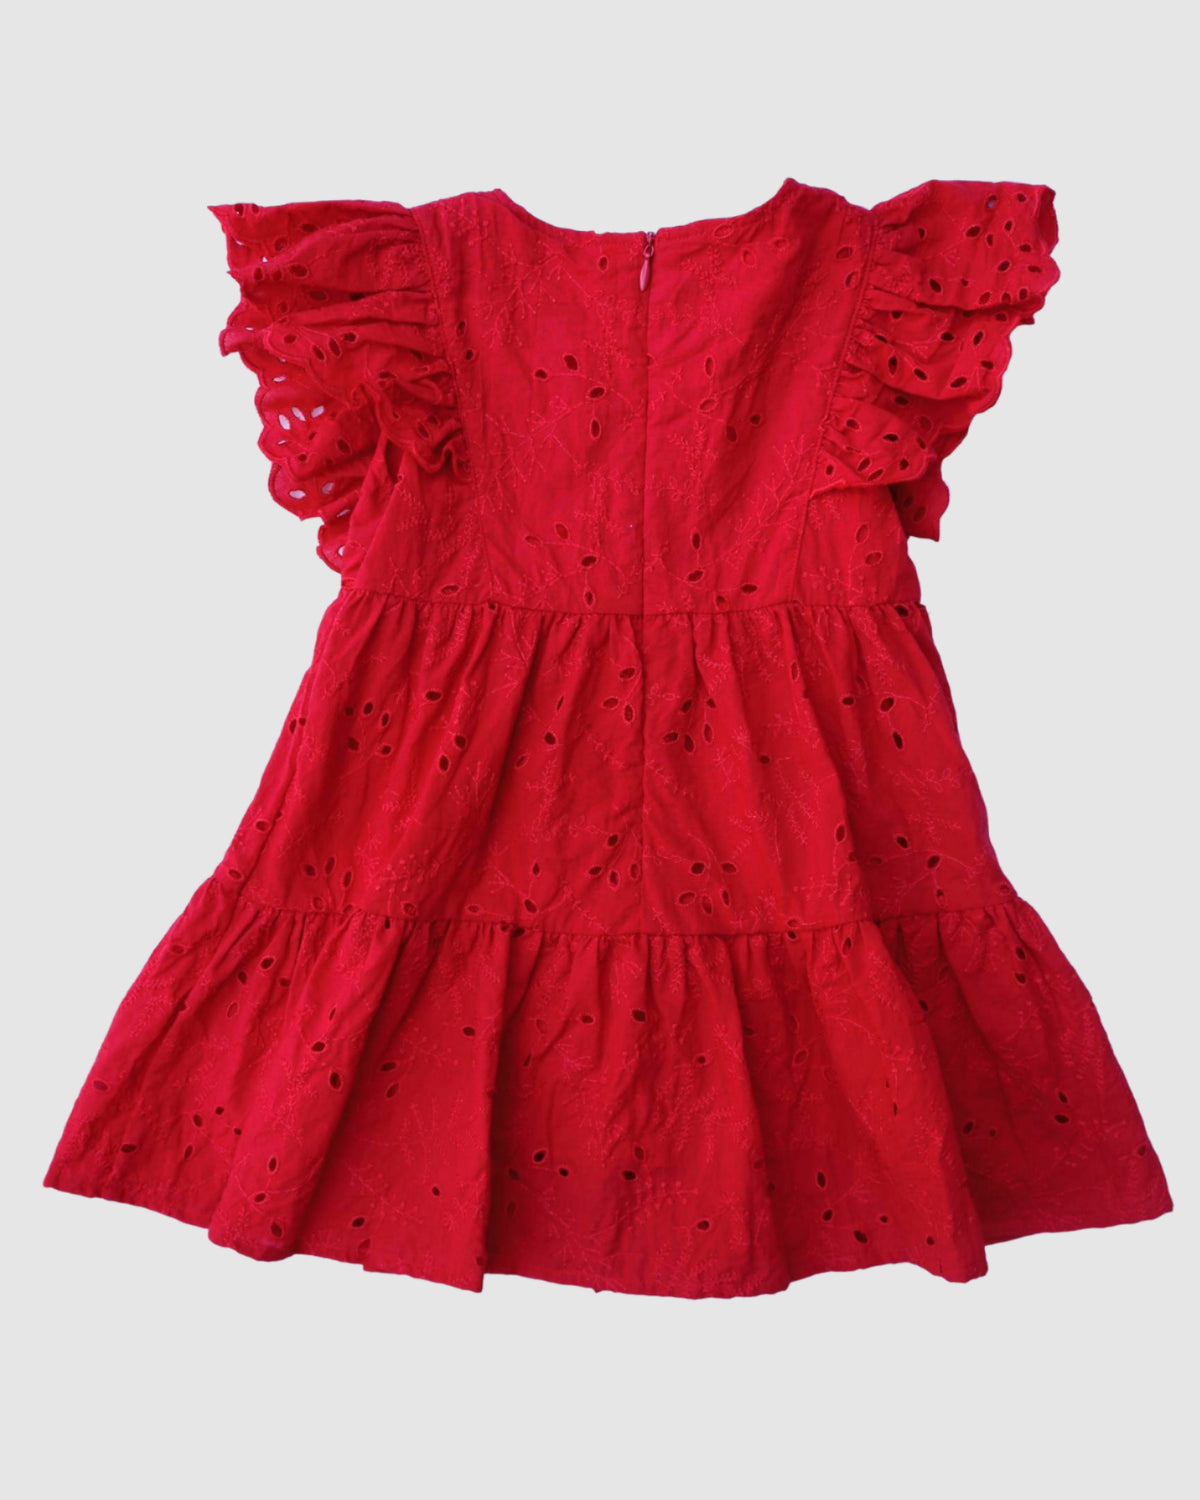 Belle Flutter Dress in Red Broderie